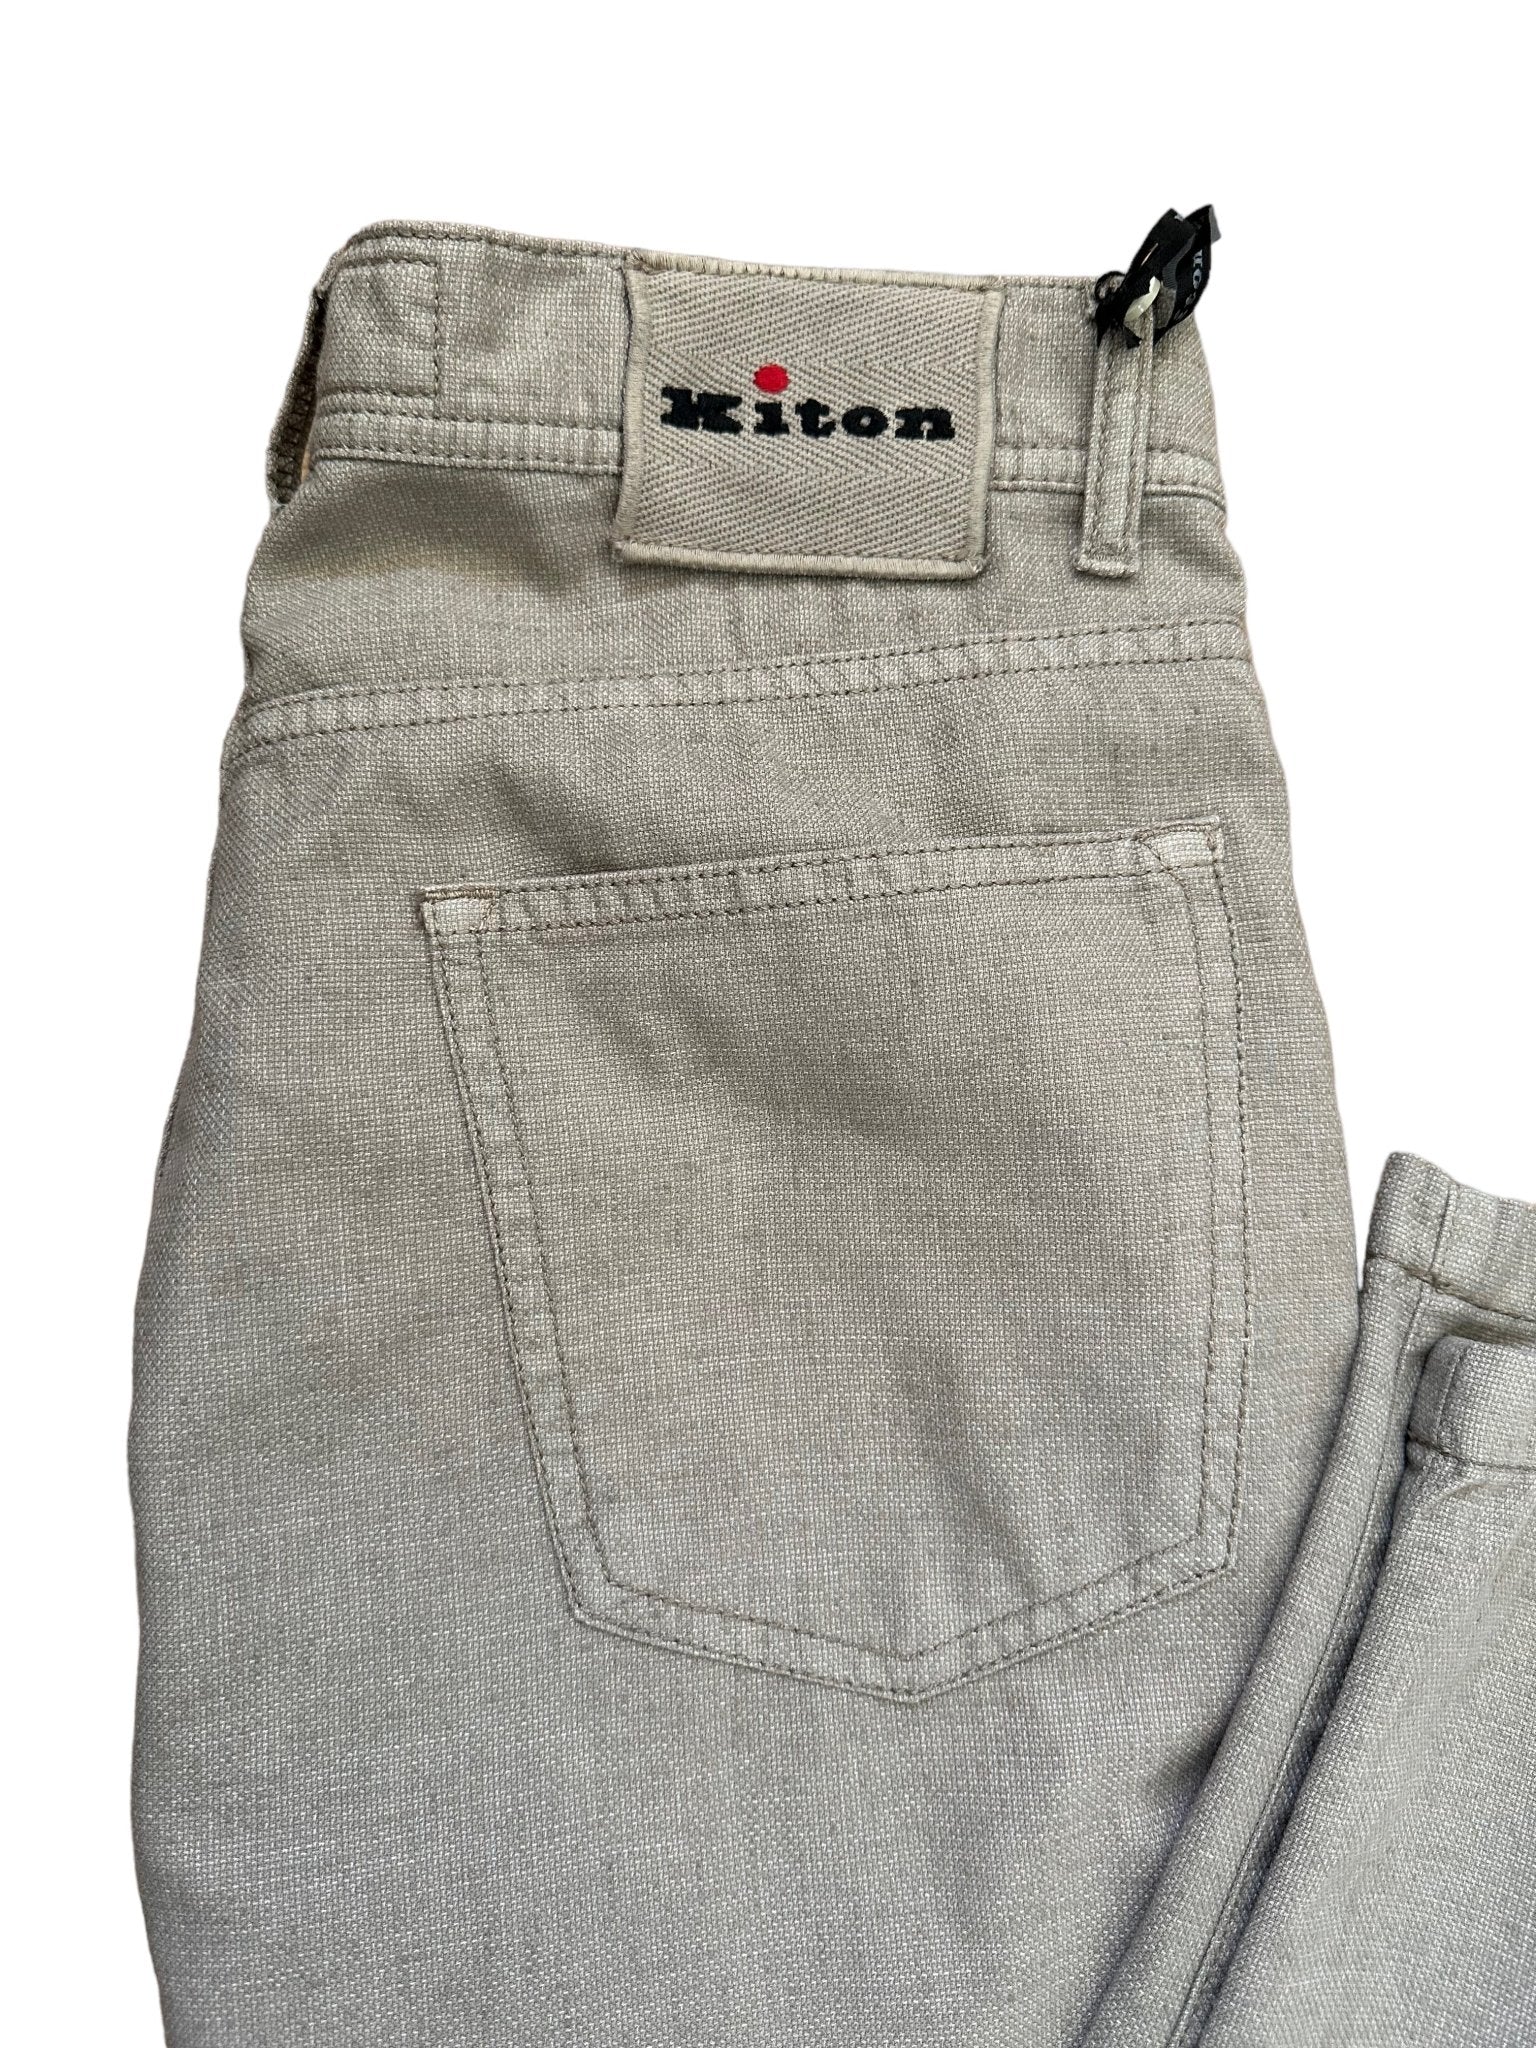 Kiton Woll/Leinenhose Slim - 24/7 Clothing